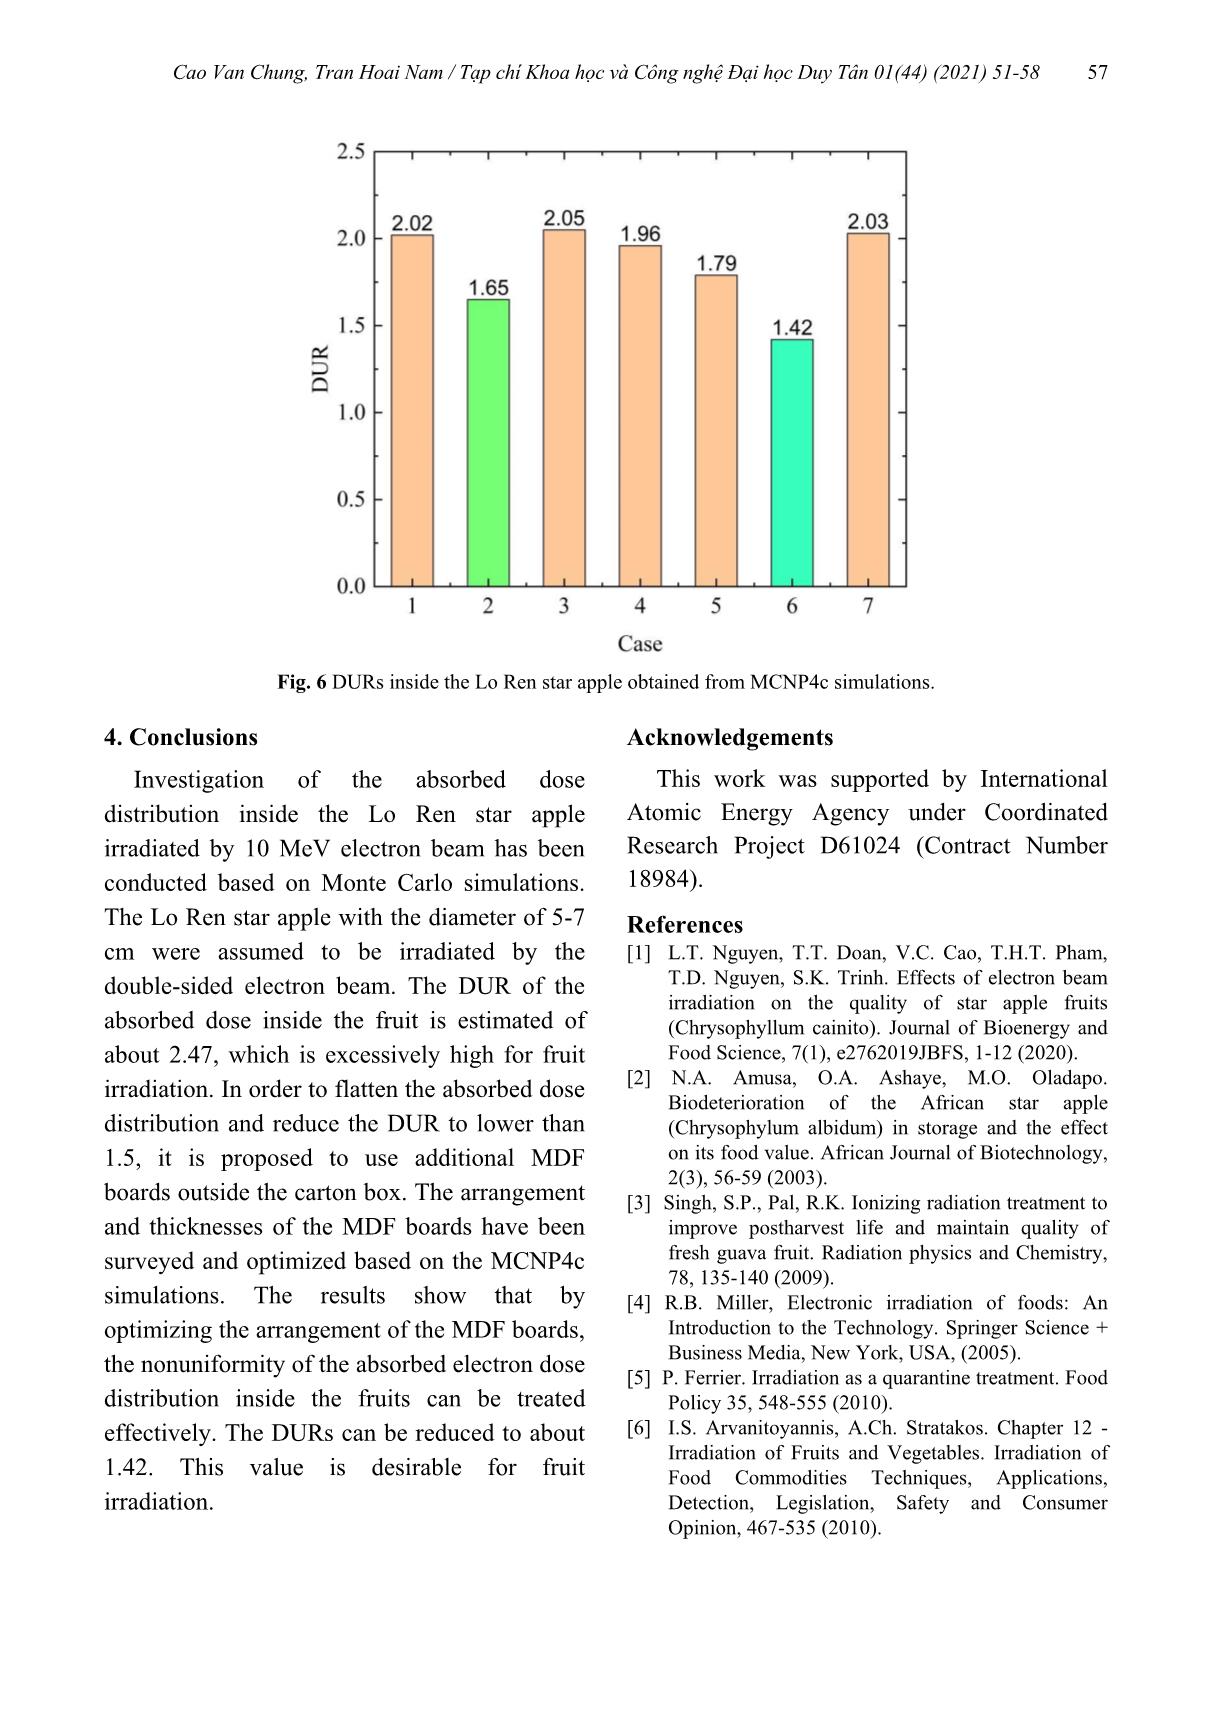 Khảo sát phân bố liều hấp thụ trong trái vú sữa chiếu xạ bởi chùm điện tử 10 MeV sử dụng mô phỏng Monte Carlo trang 7